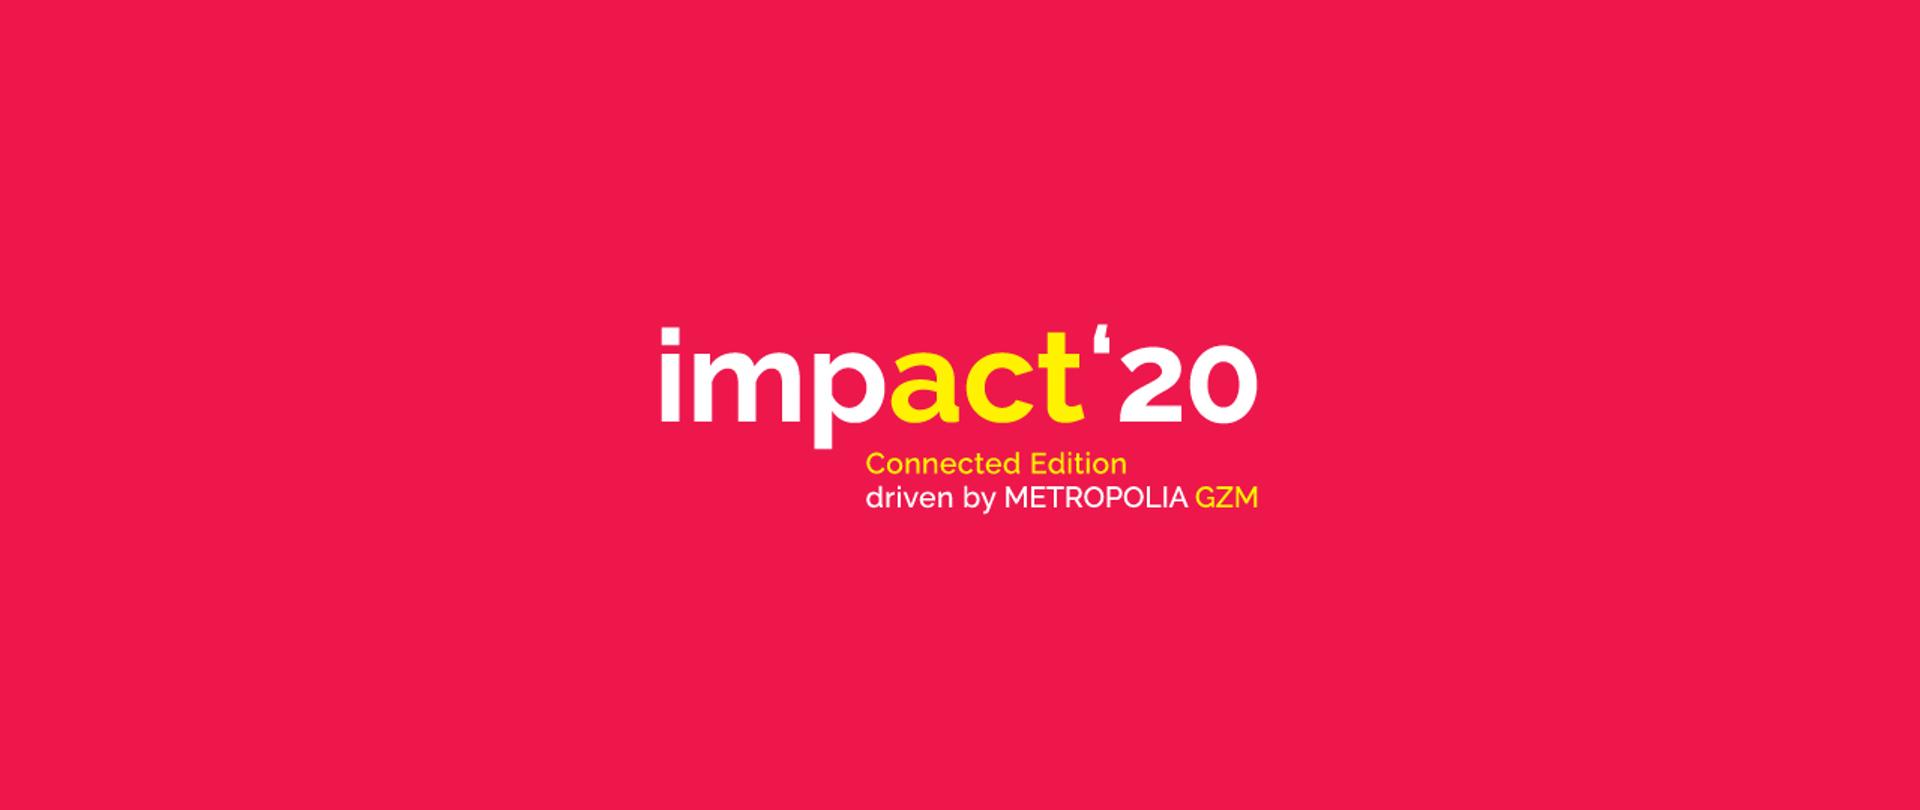 Czerwona plansza z tytułem "Impact'20".